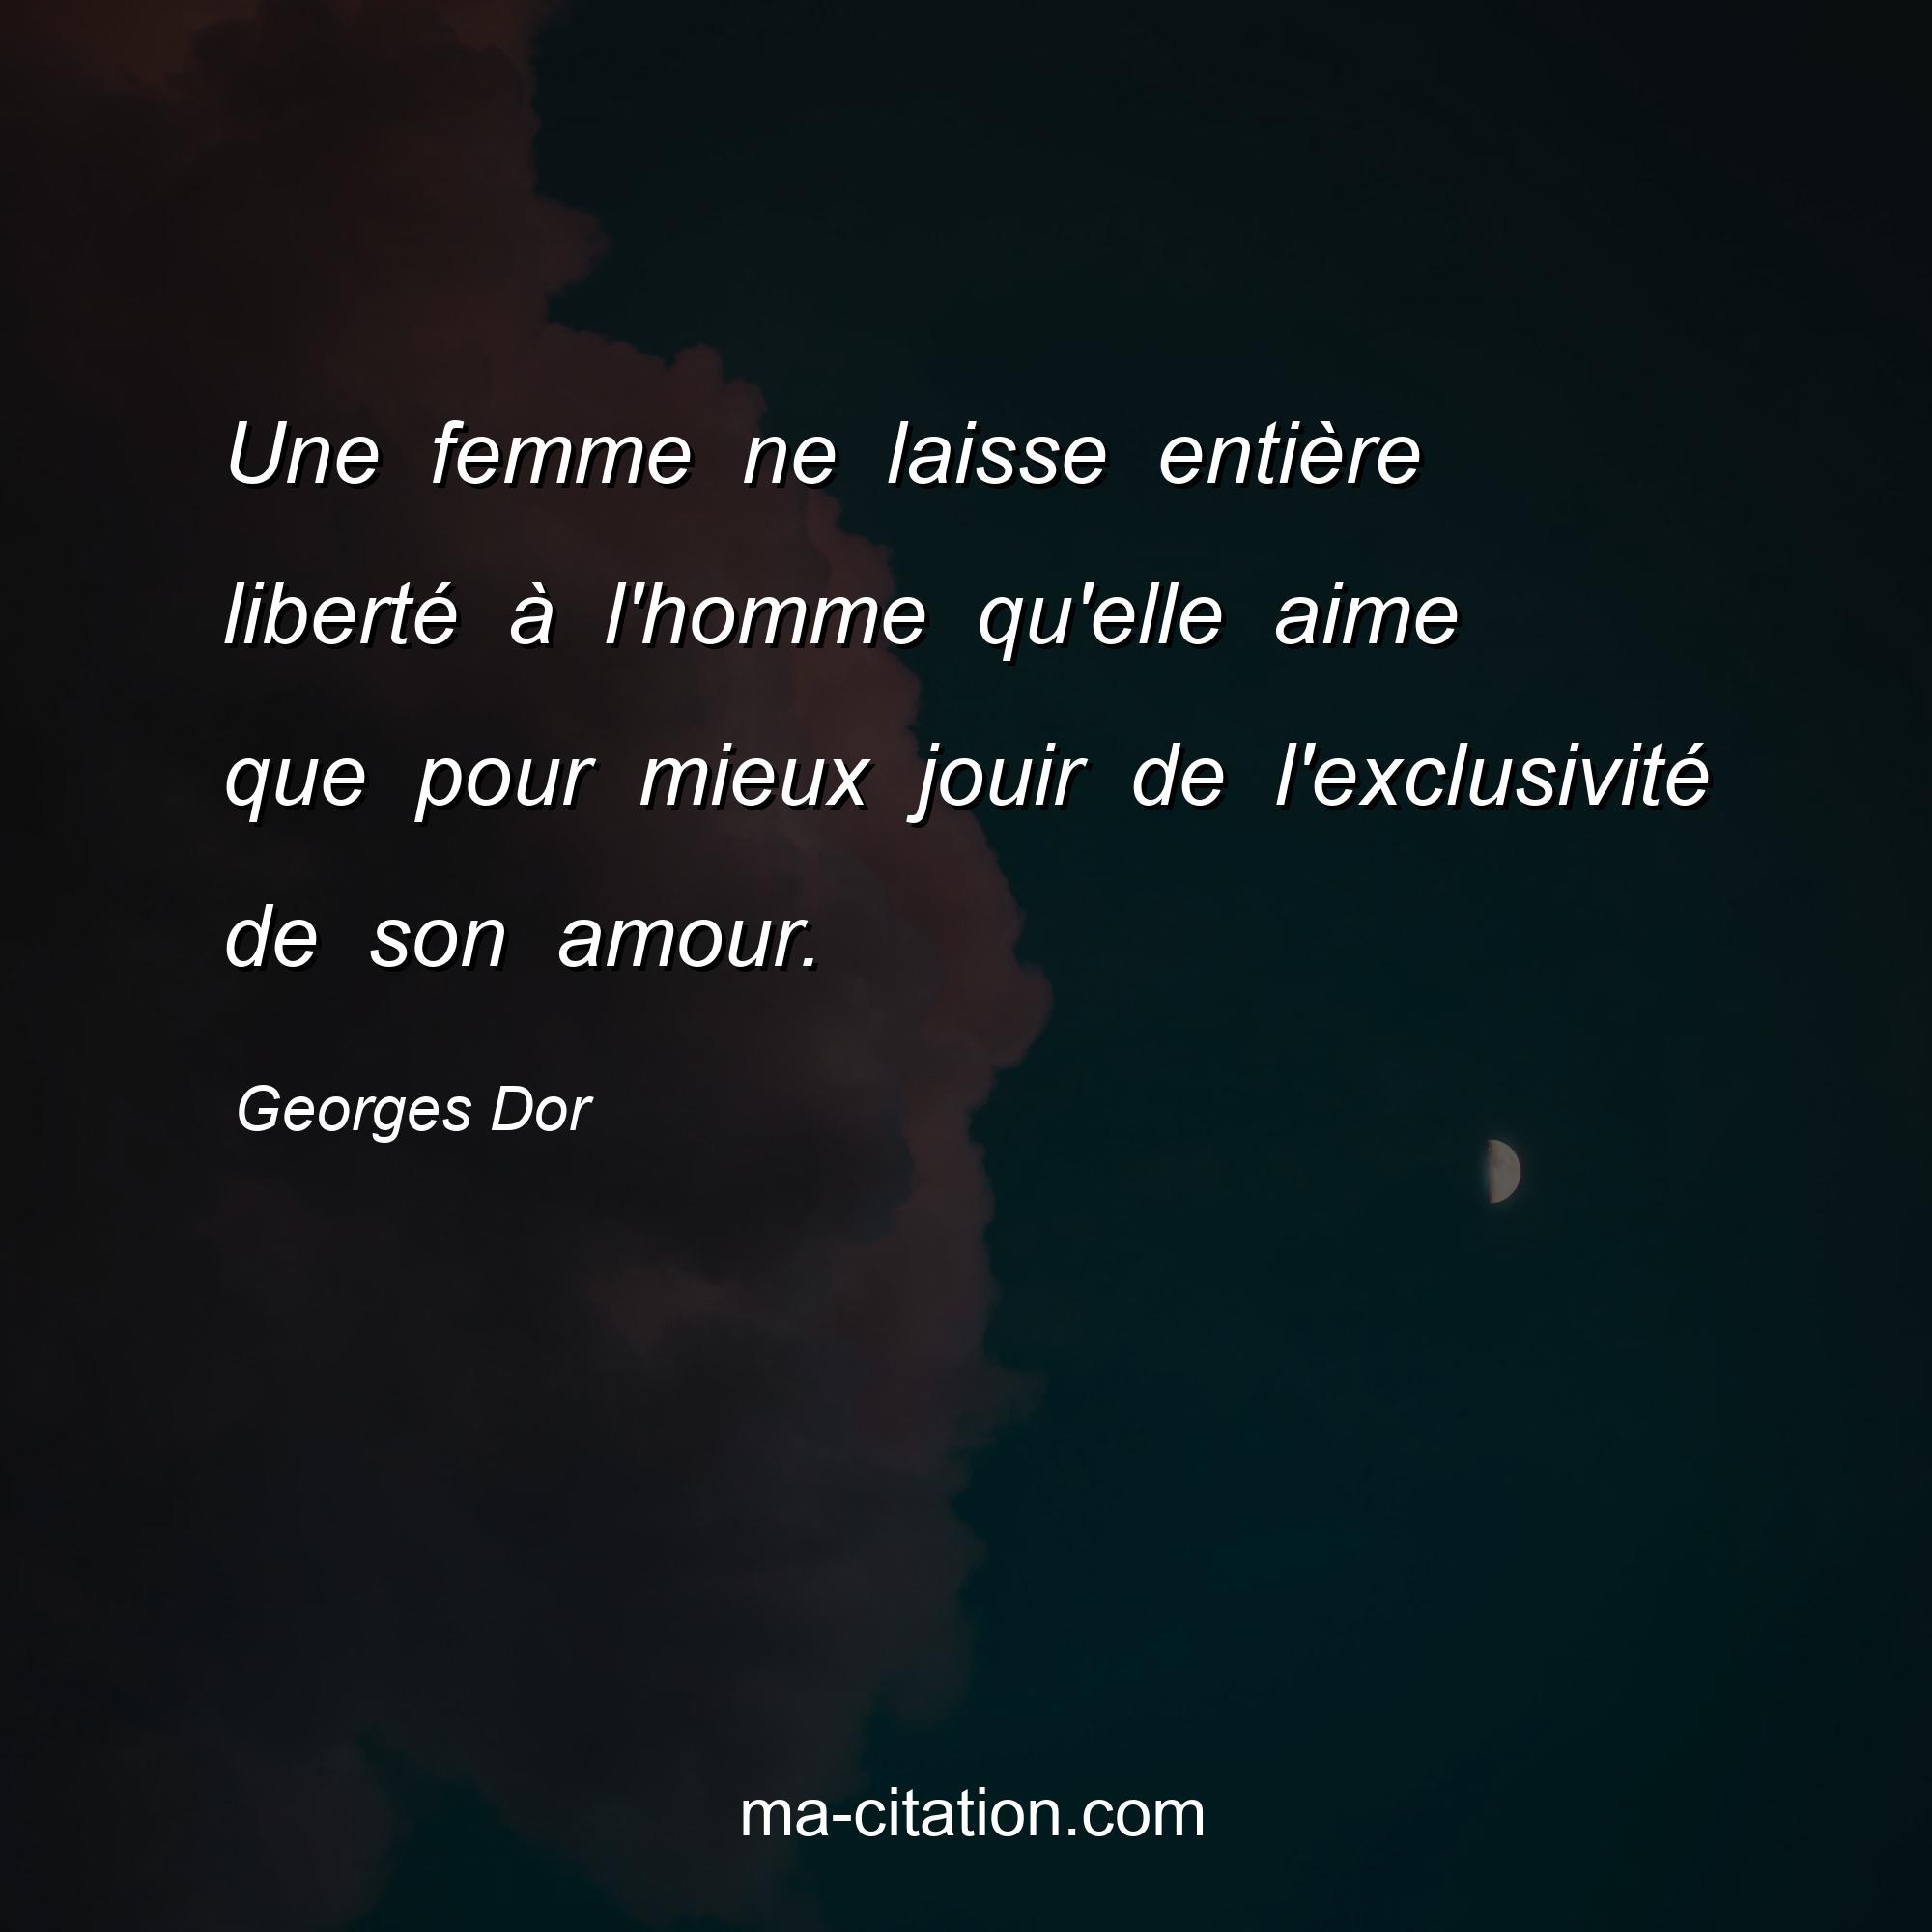 Georges Dor : Une femme ne laisse entière liberté à l'homme qu'elle aime que pour mieux jouir de l'exclusivité de son amour.